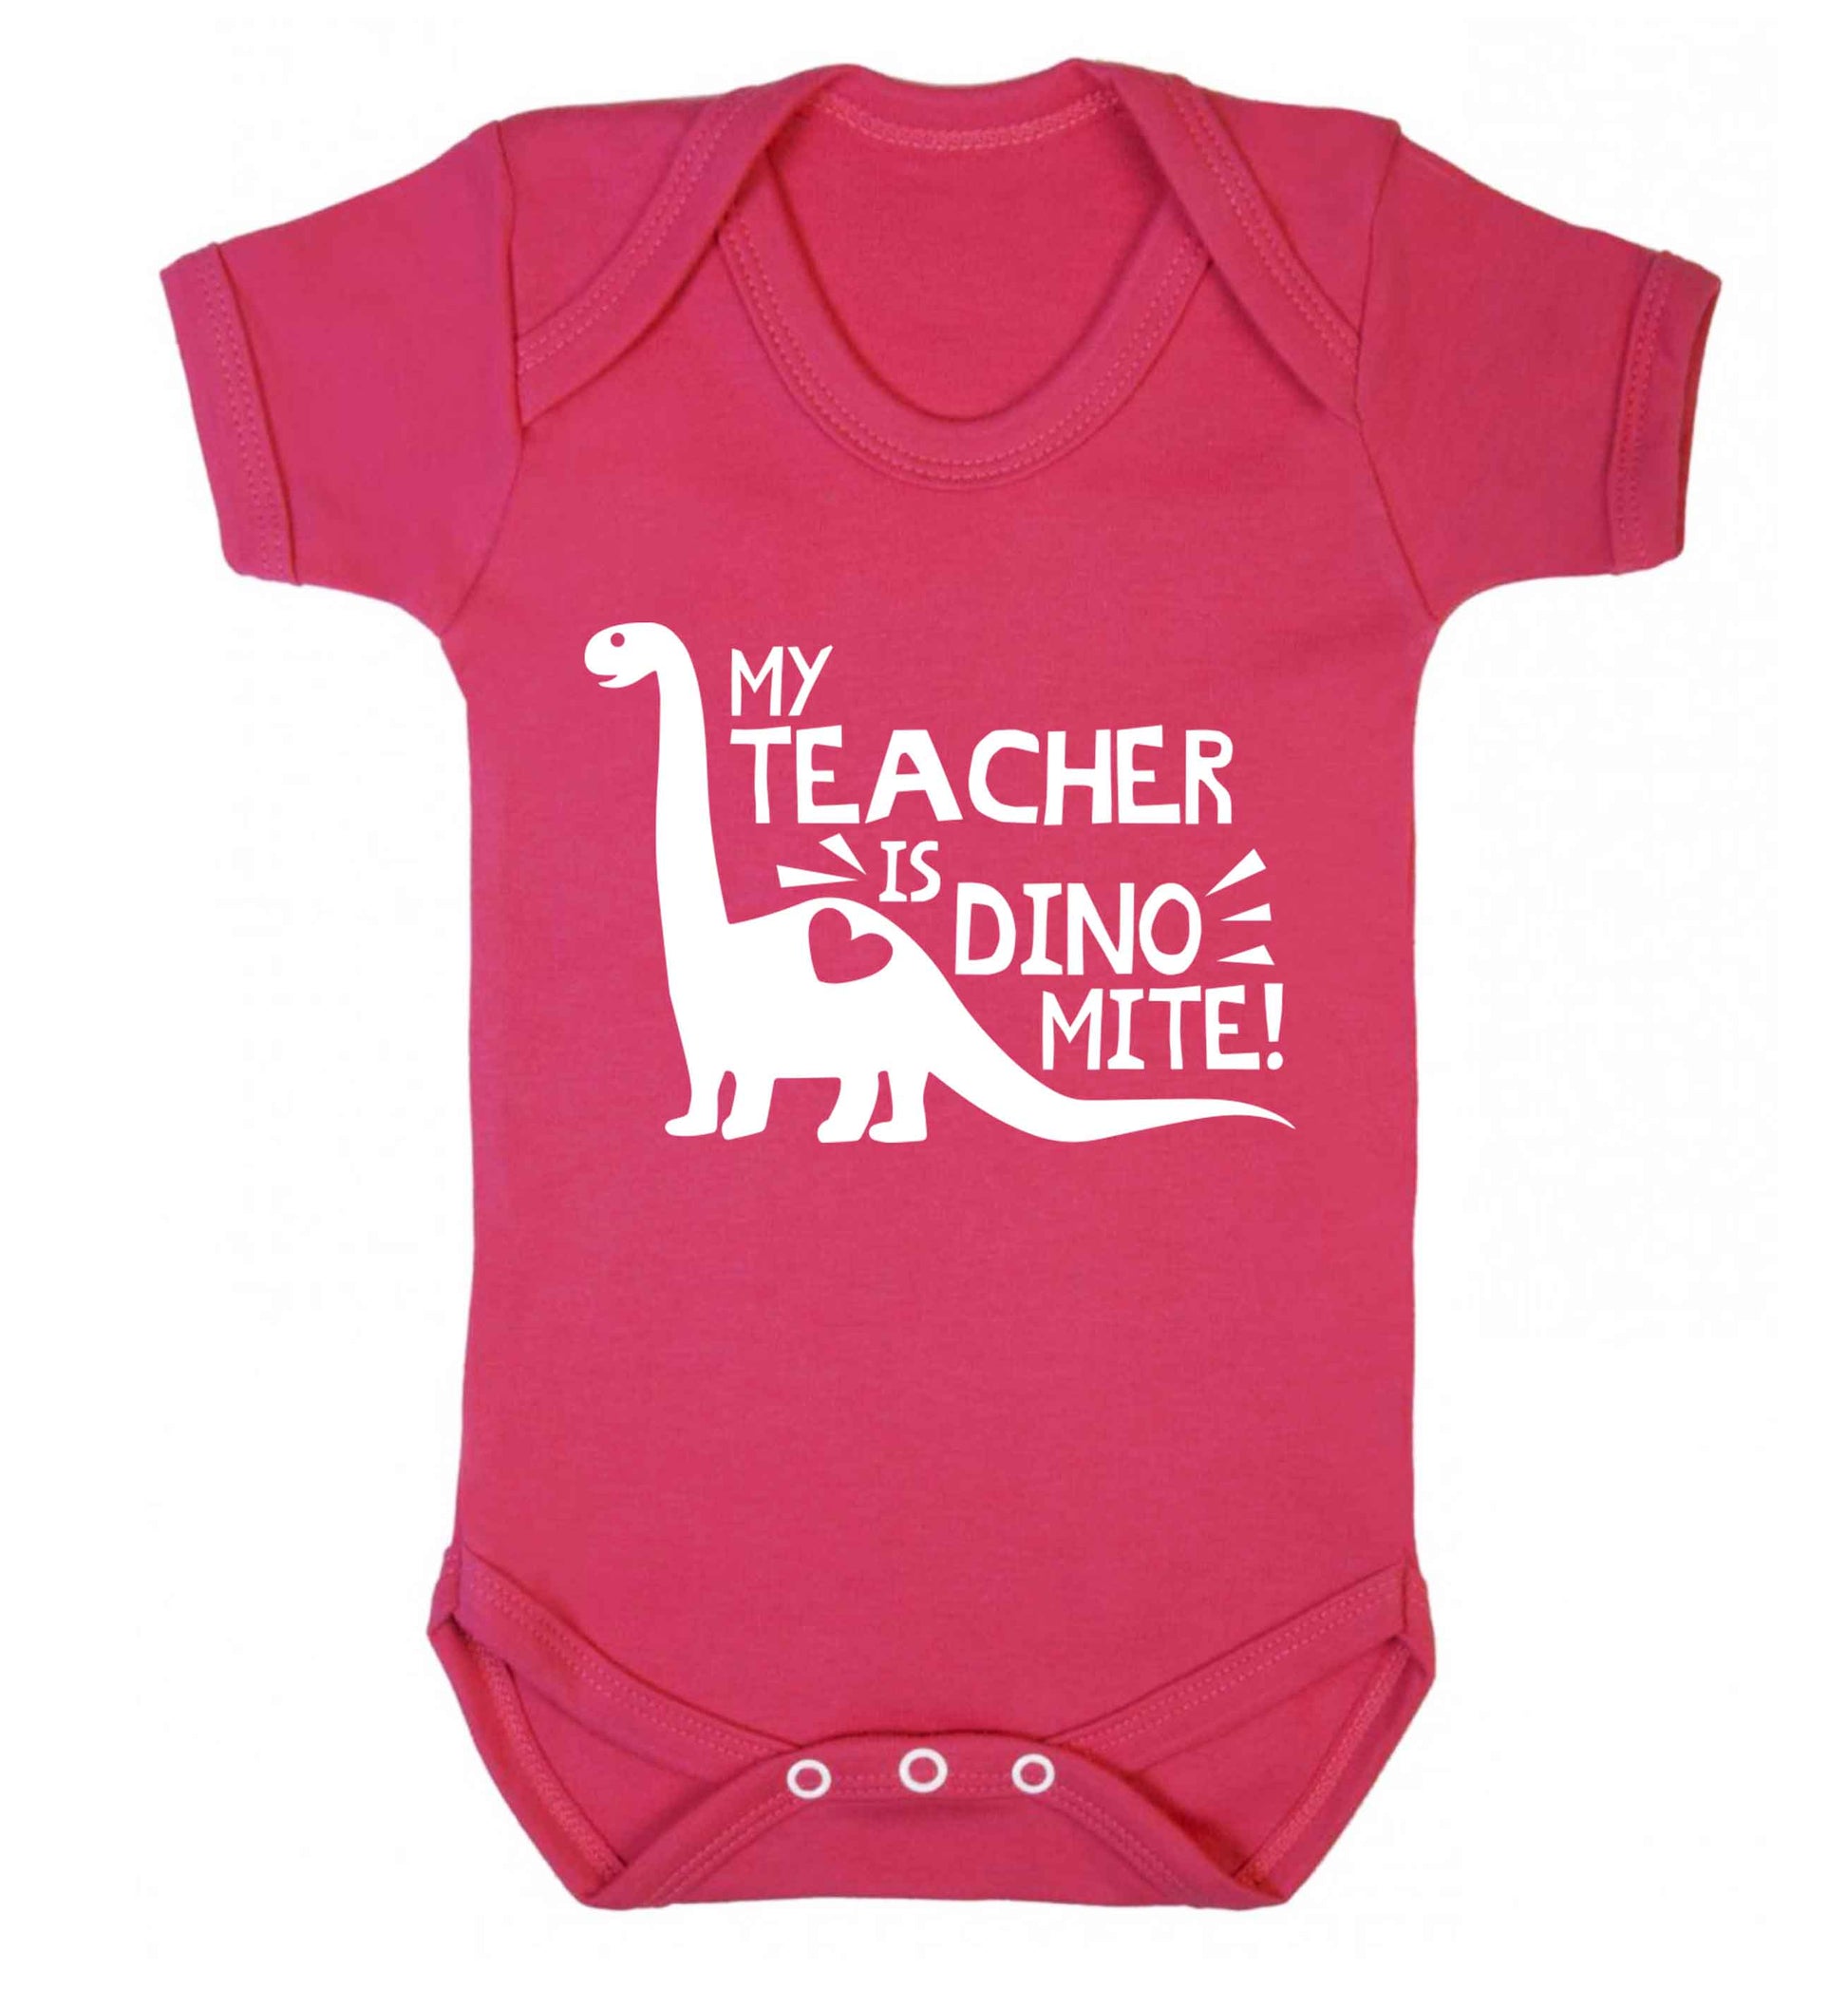 My teacher is dinomite! Baby Vest dark pink 18-24 months